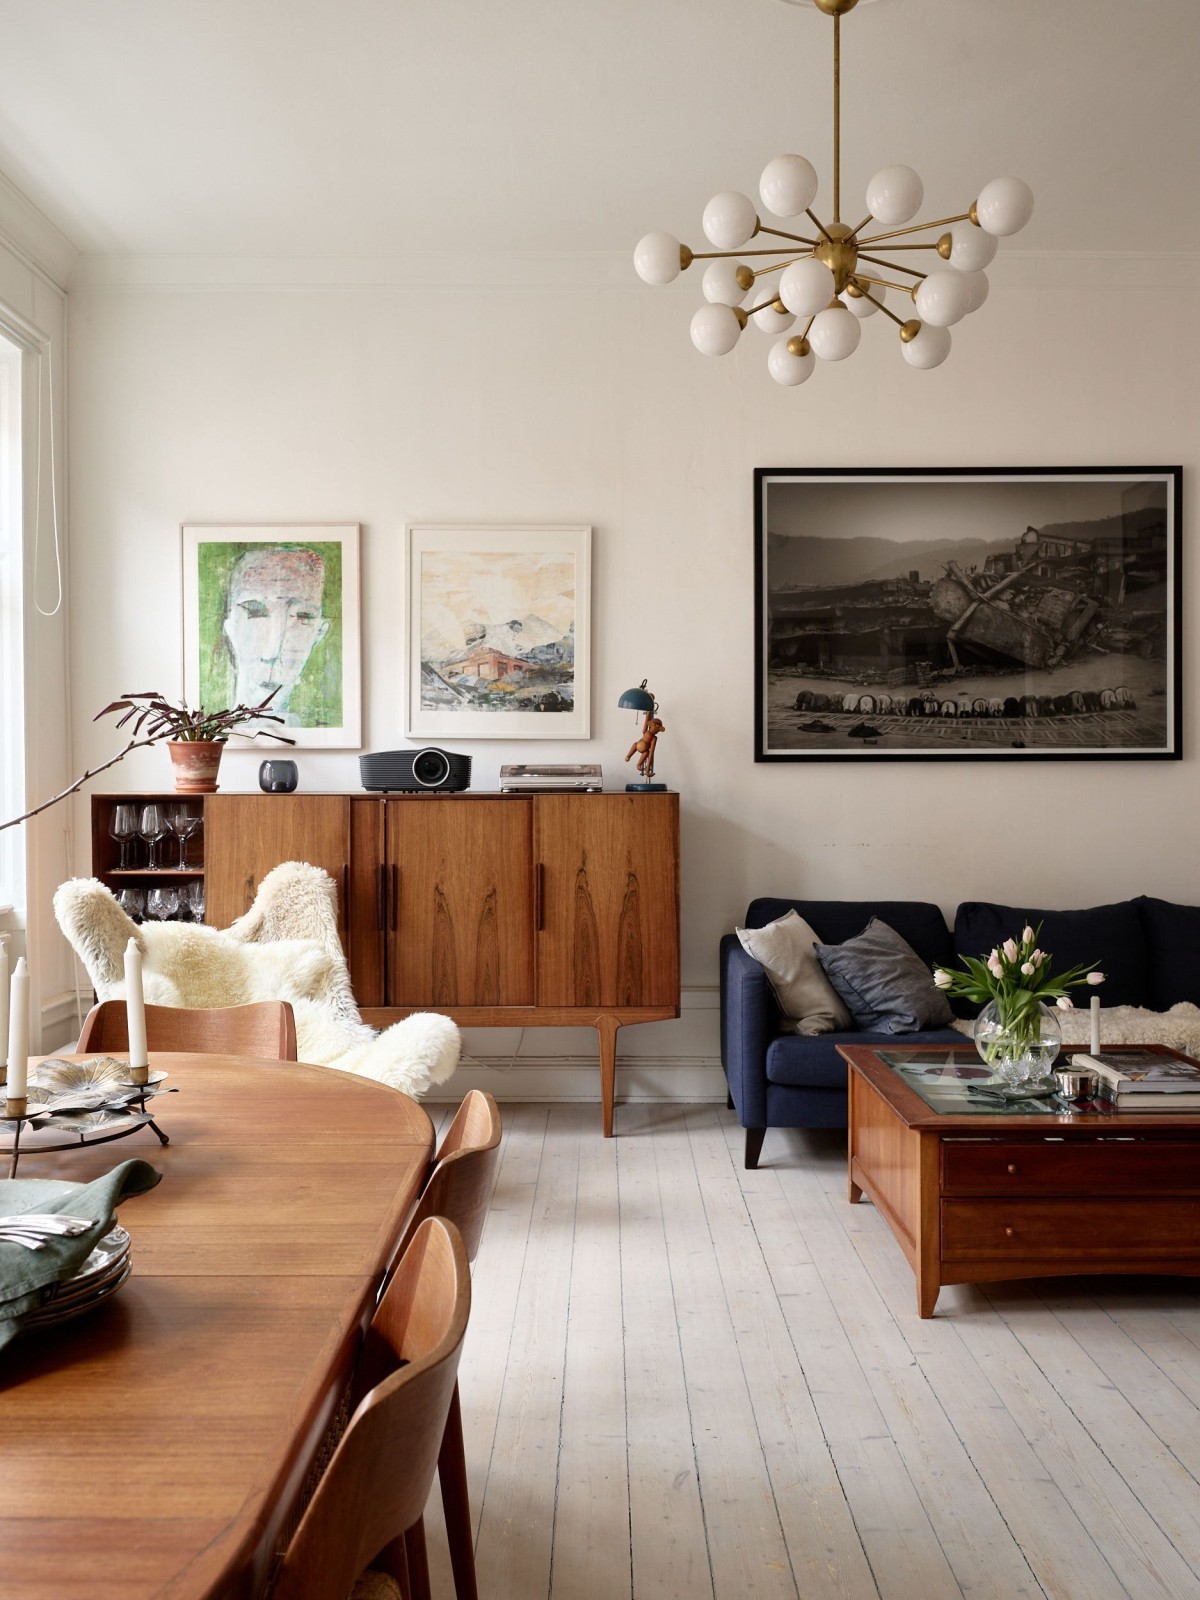 El mueble de moda: mesas altas en tu hogar - Muebles rústicos a